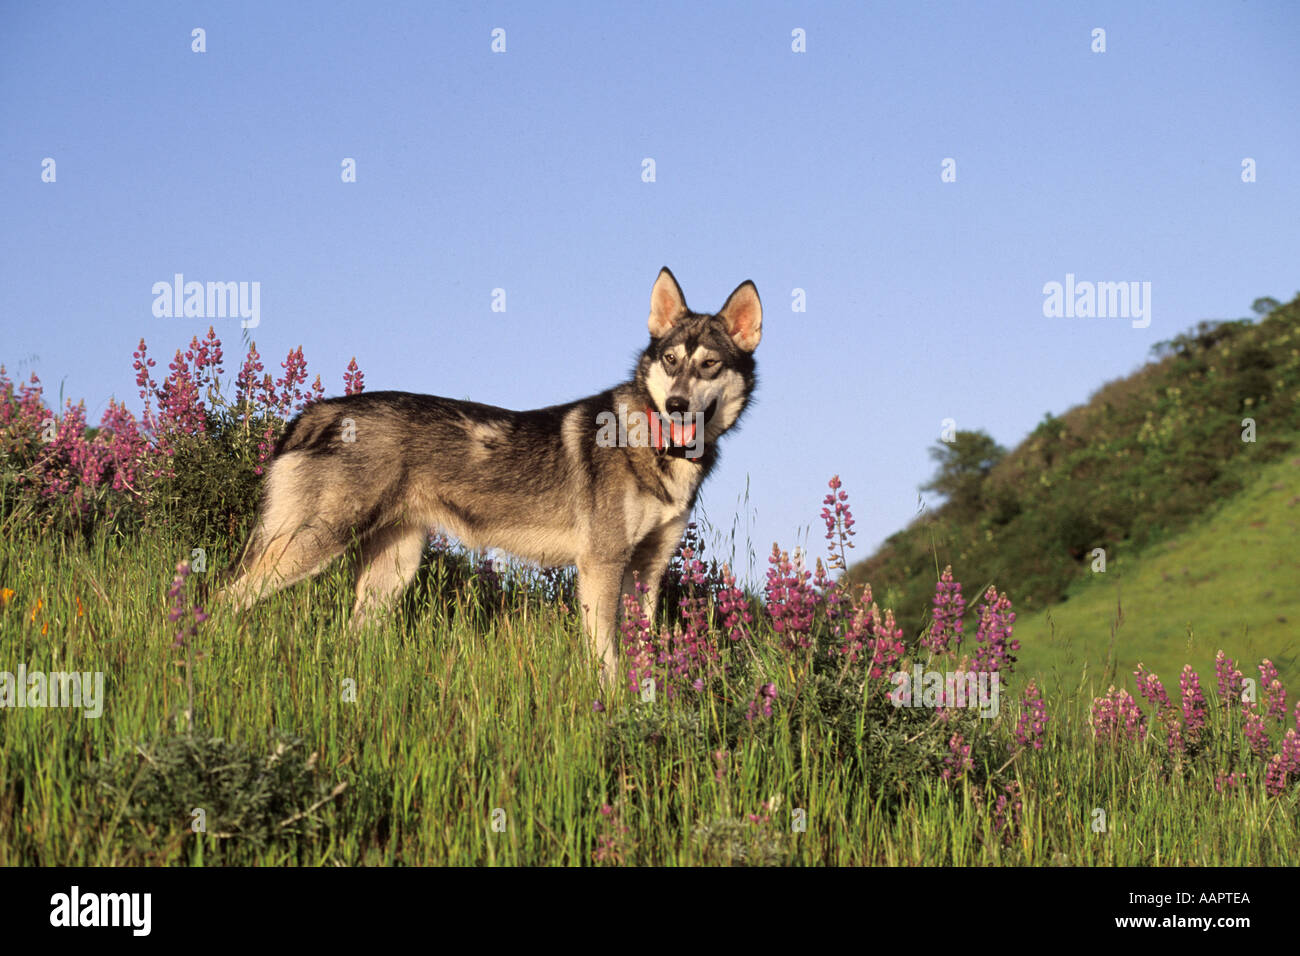 Dogs, Wolf hybrid and husky mix Stock Photo - Alamy